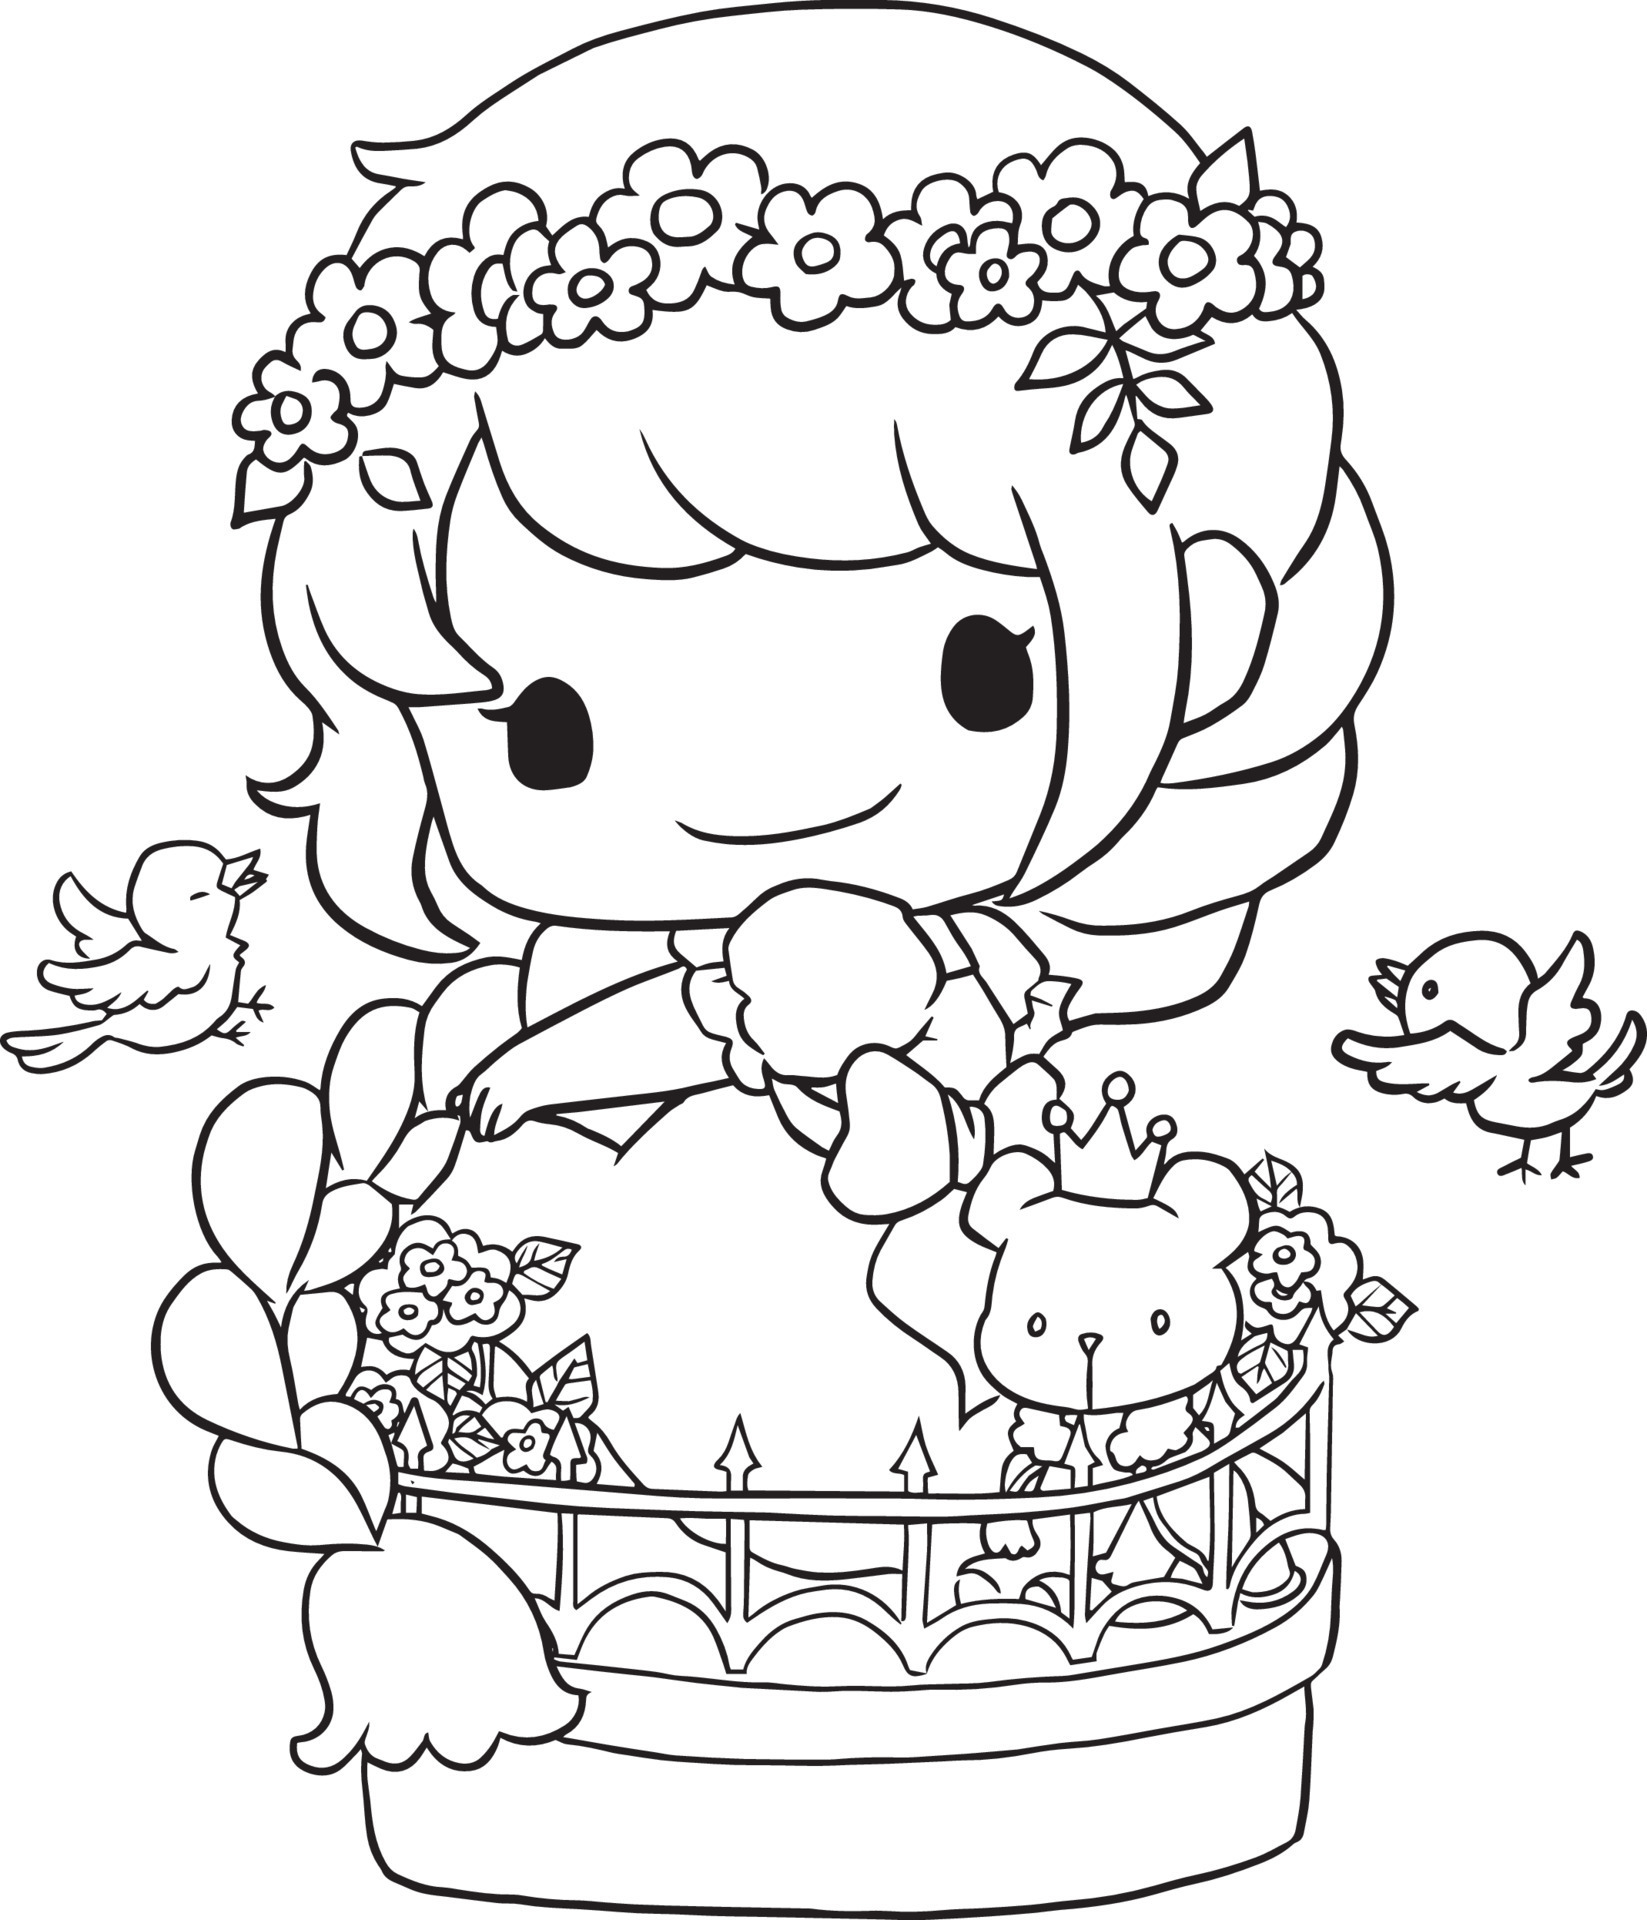 Desenho Para Colorir Com Princesa Bonito Estilo Kawaii Colorir Imagem  imagem vetorial de ksuklein© 163905324